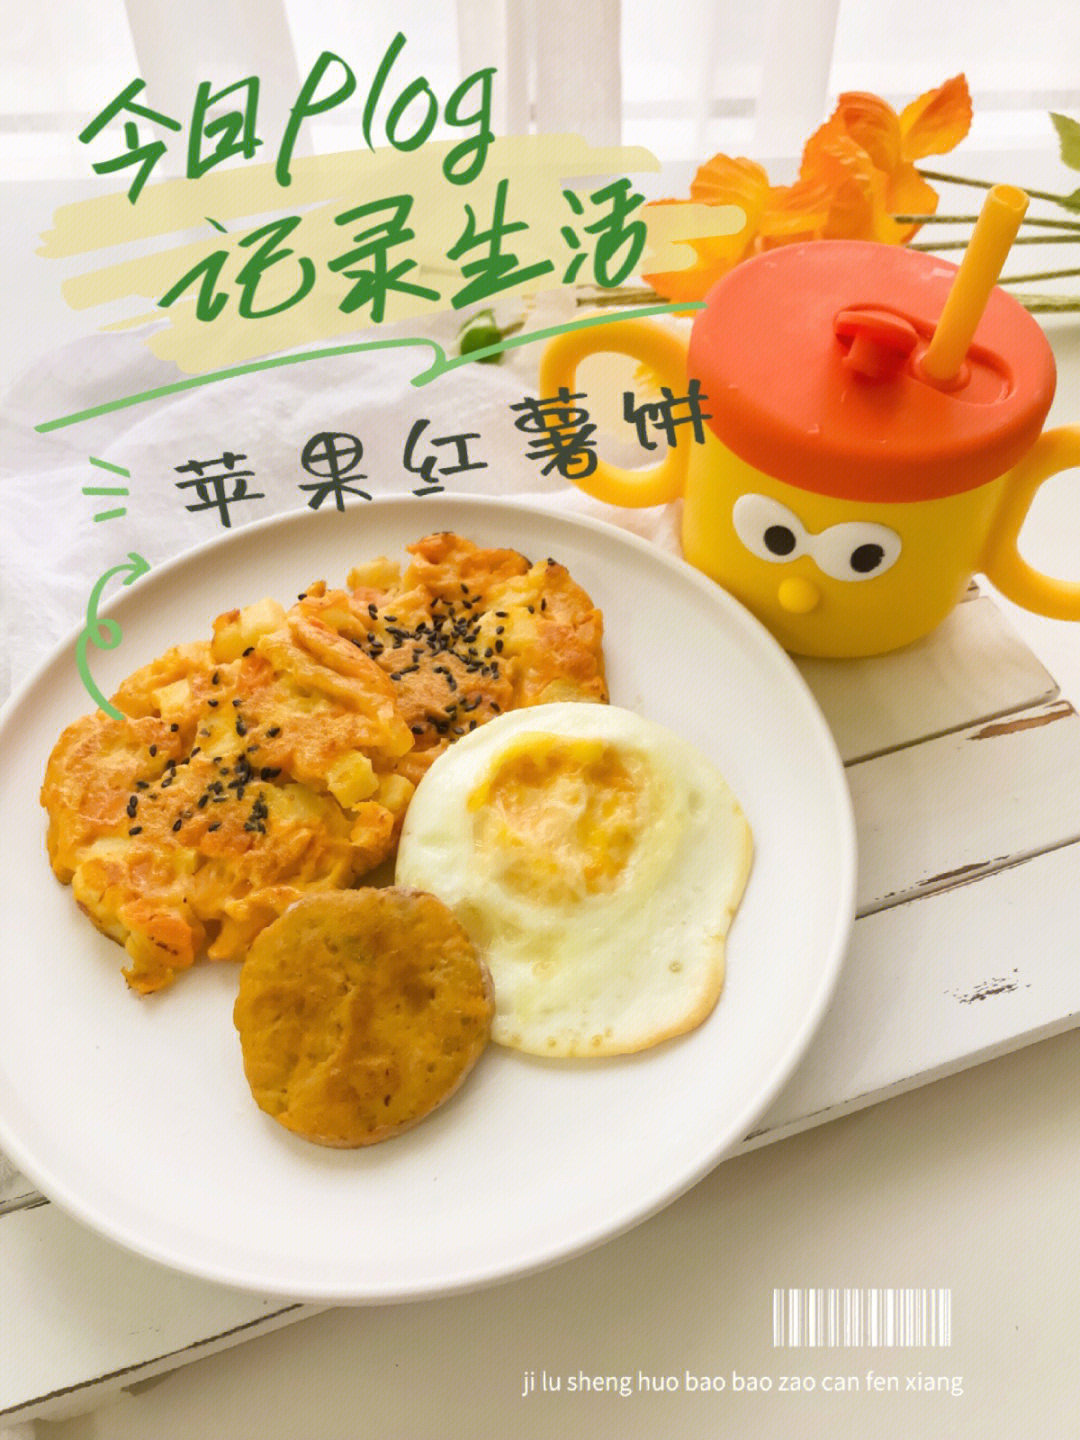 多功能料理锅早餐食谱图片